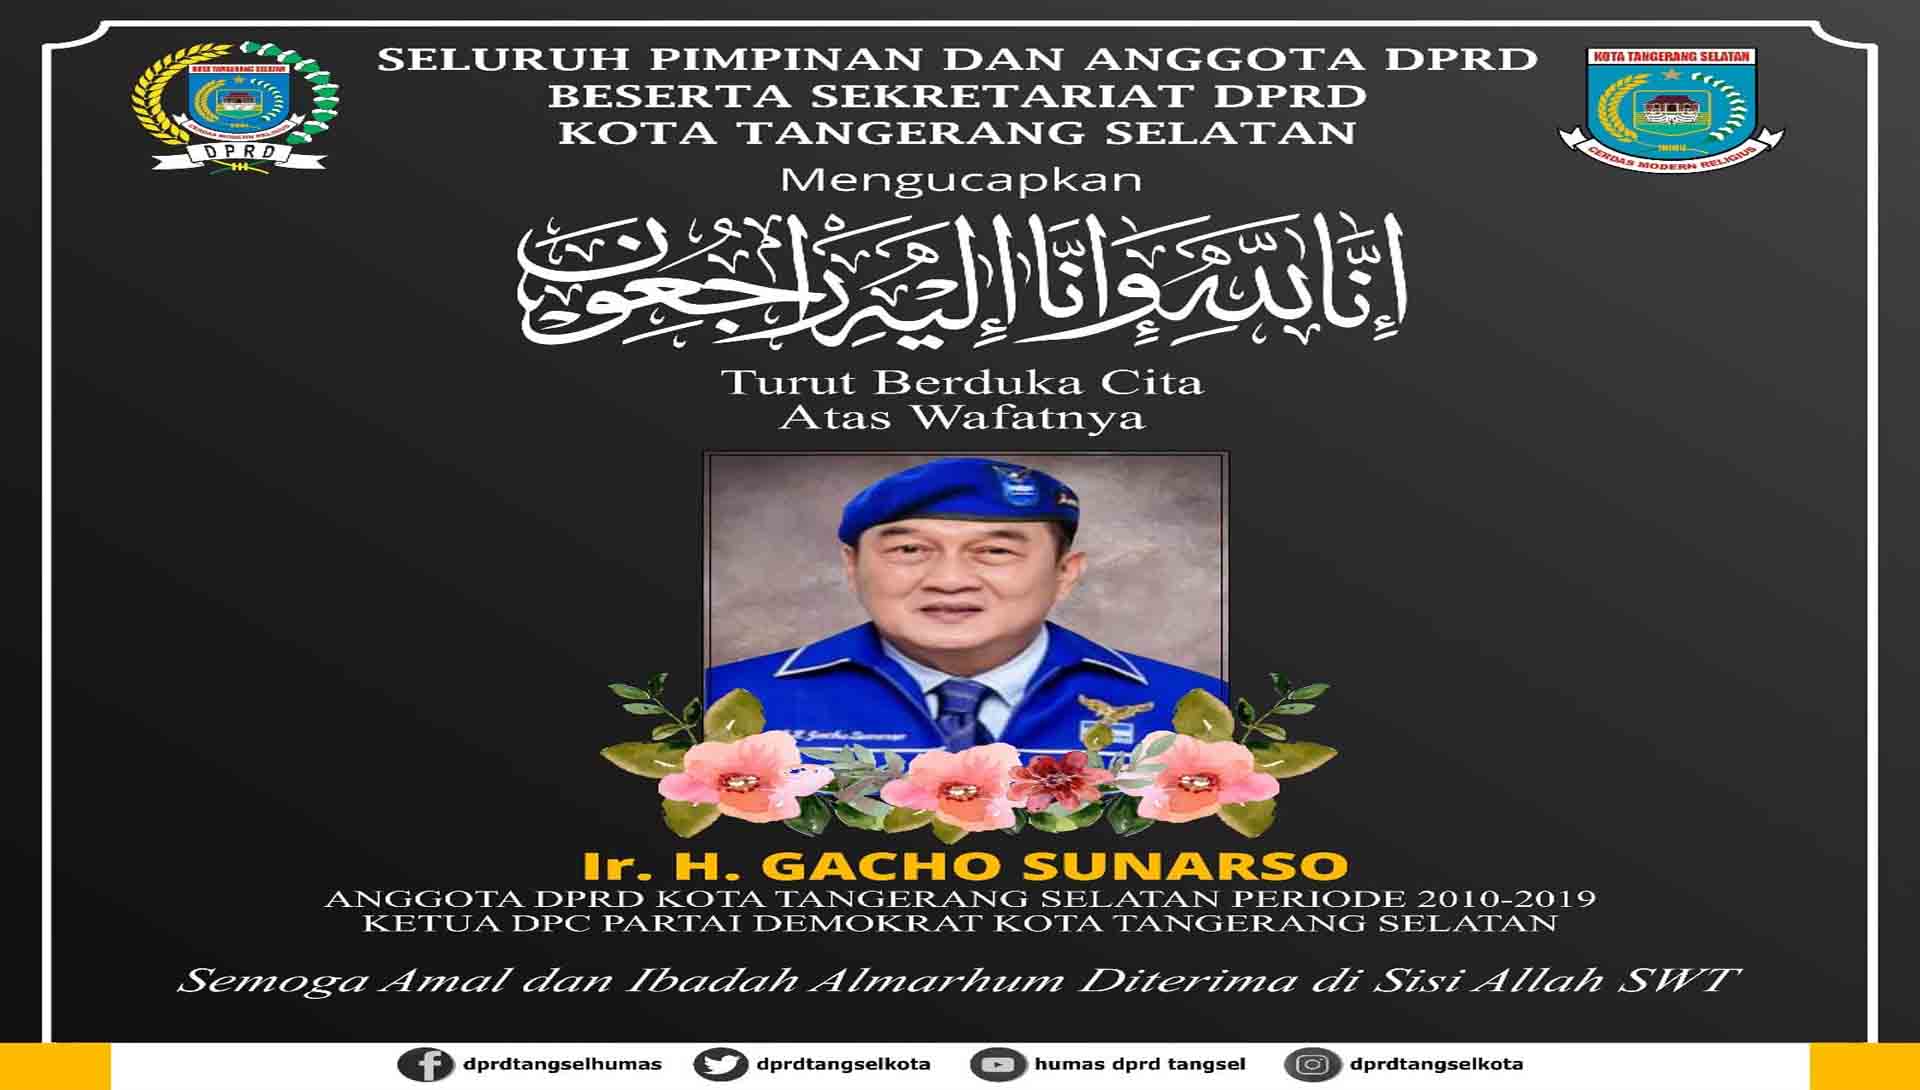 Turut Berduka Cita atas wafatnya Bapak Ir. H. Gacho Sunarso